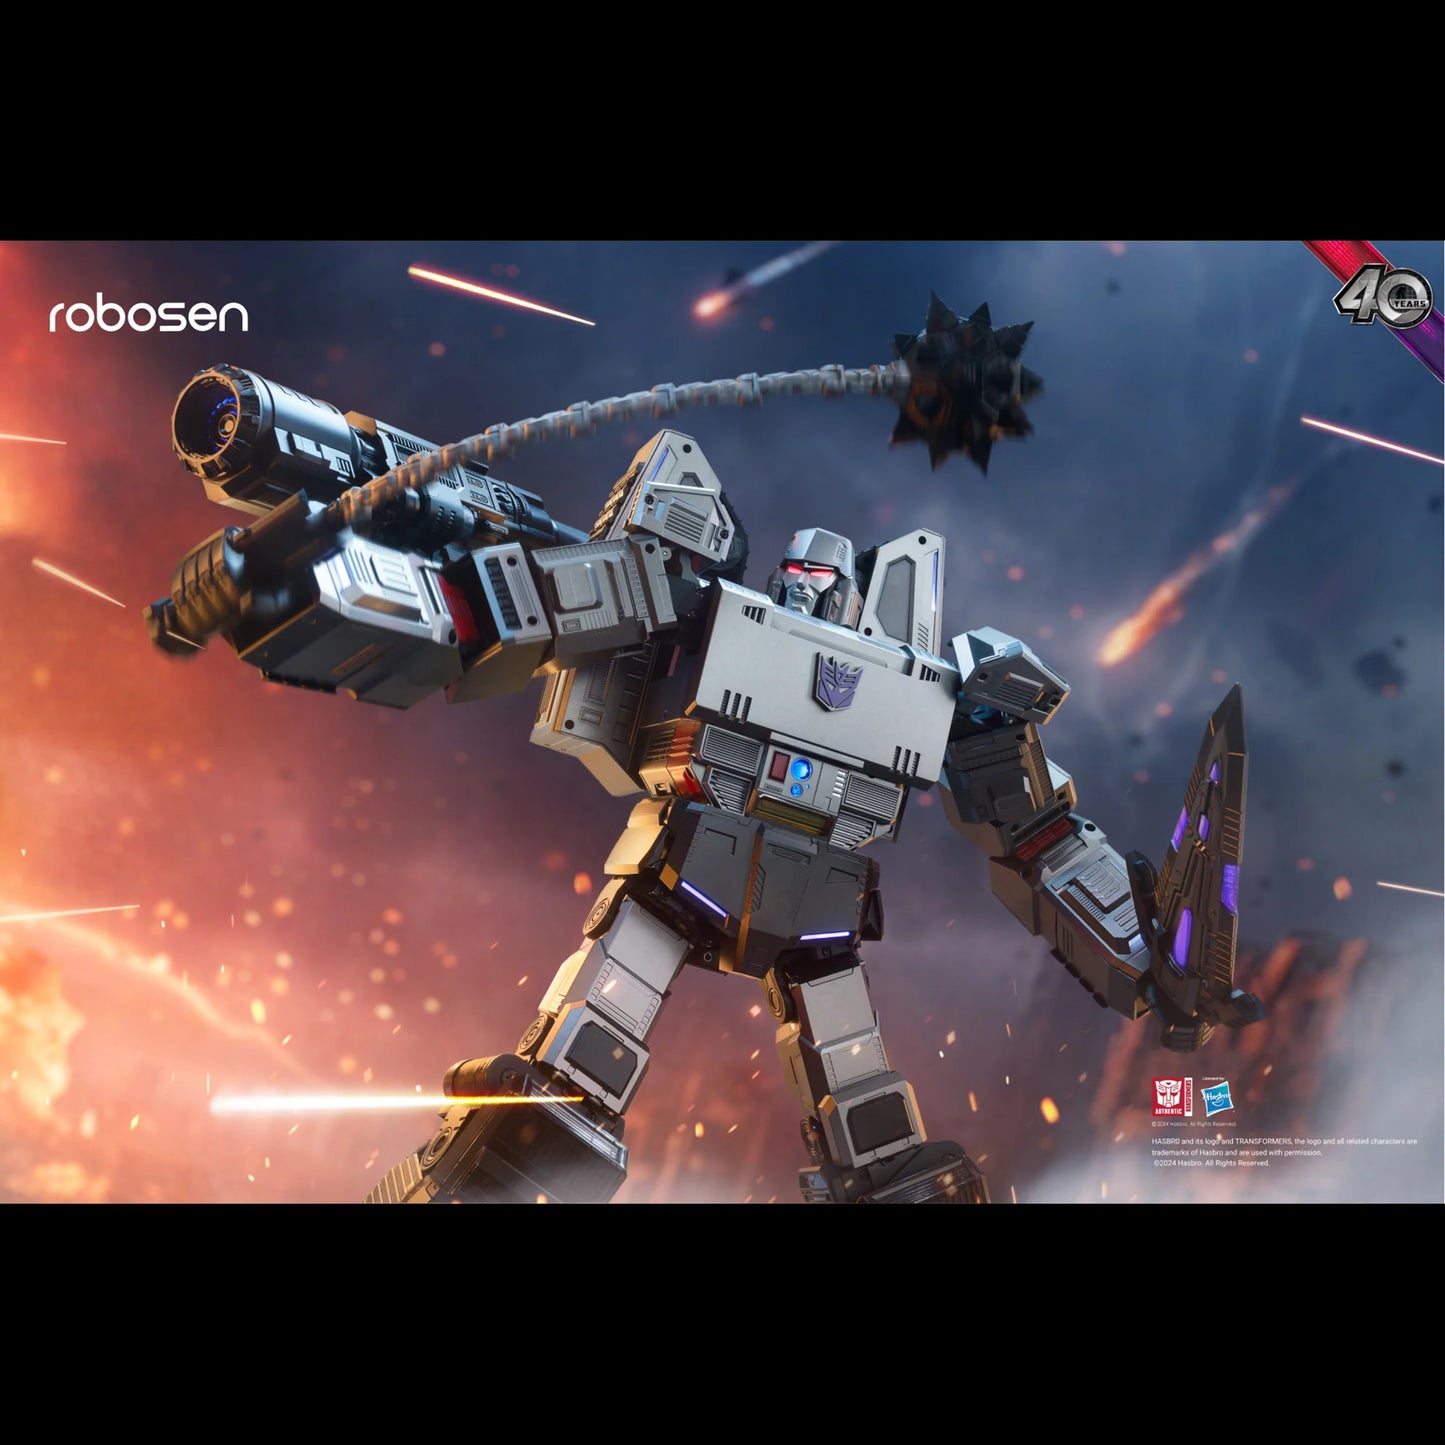 PREORDER Robosen Transformers Megatron Auto-Converting Robot Flagship